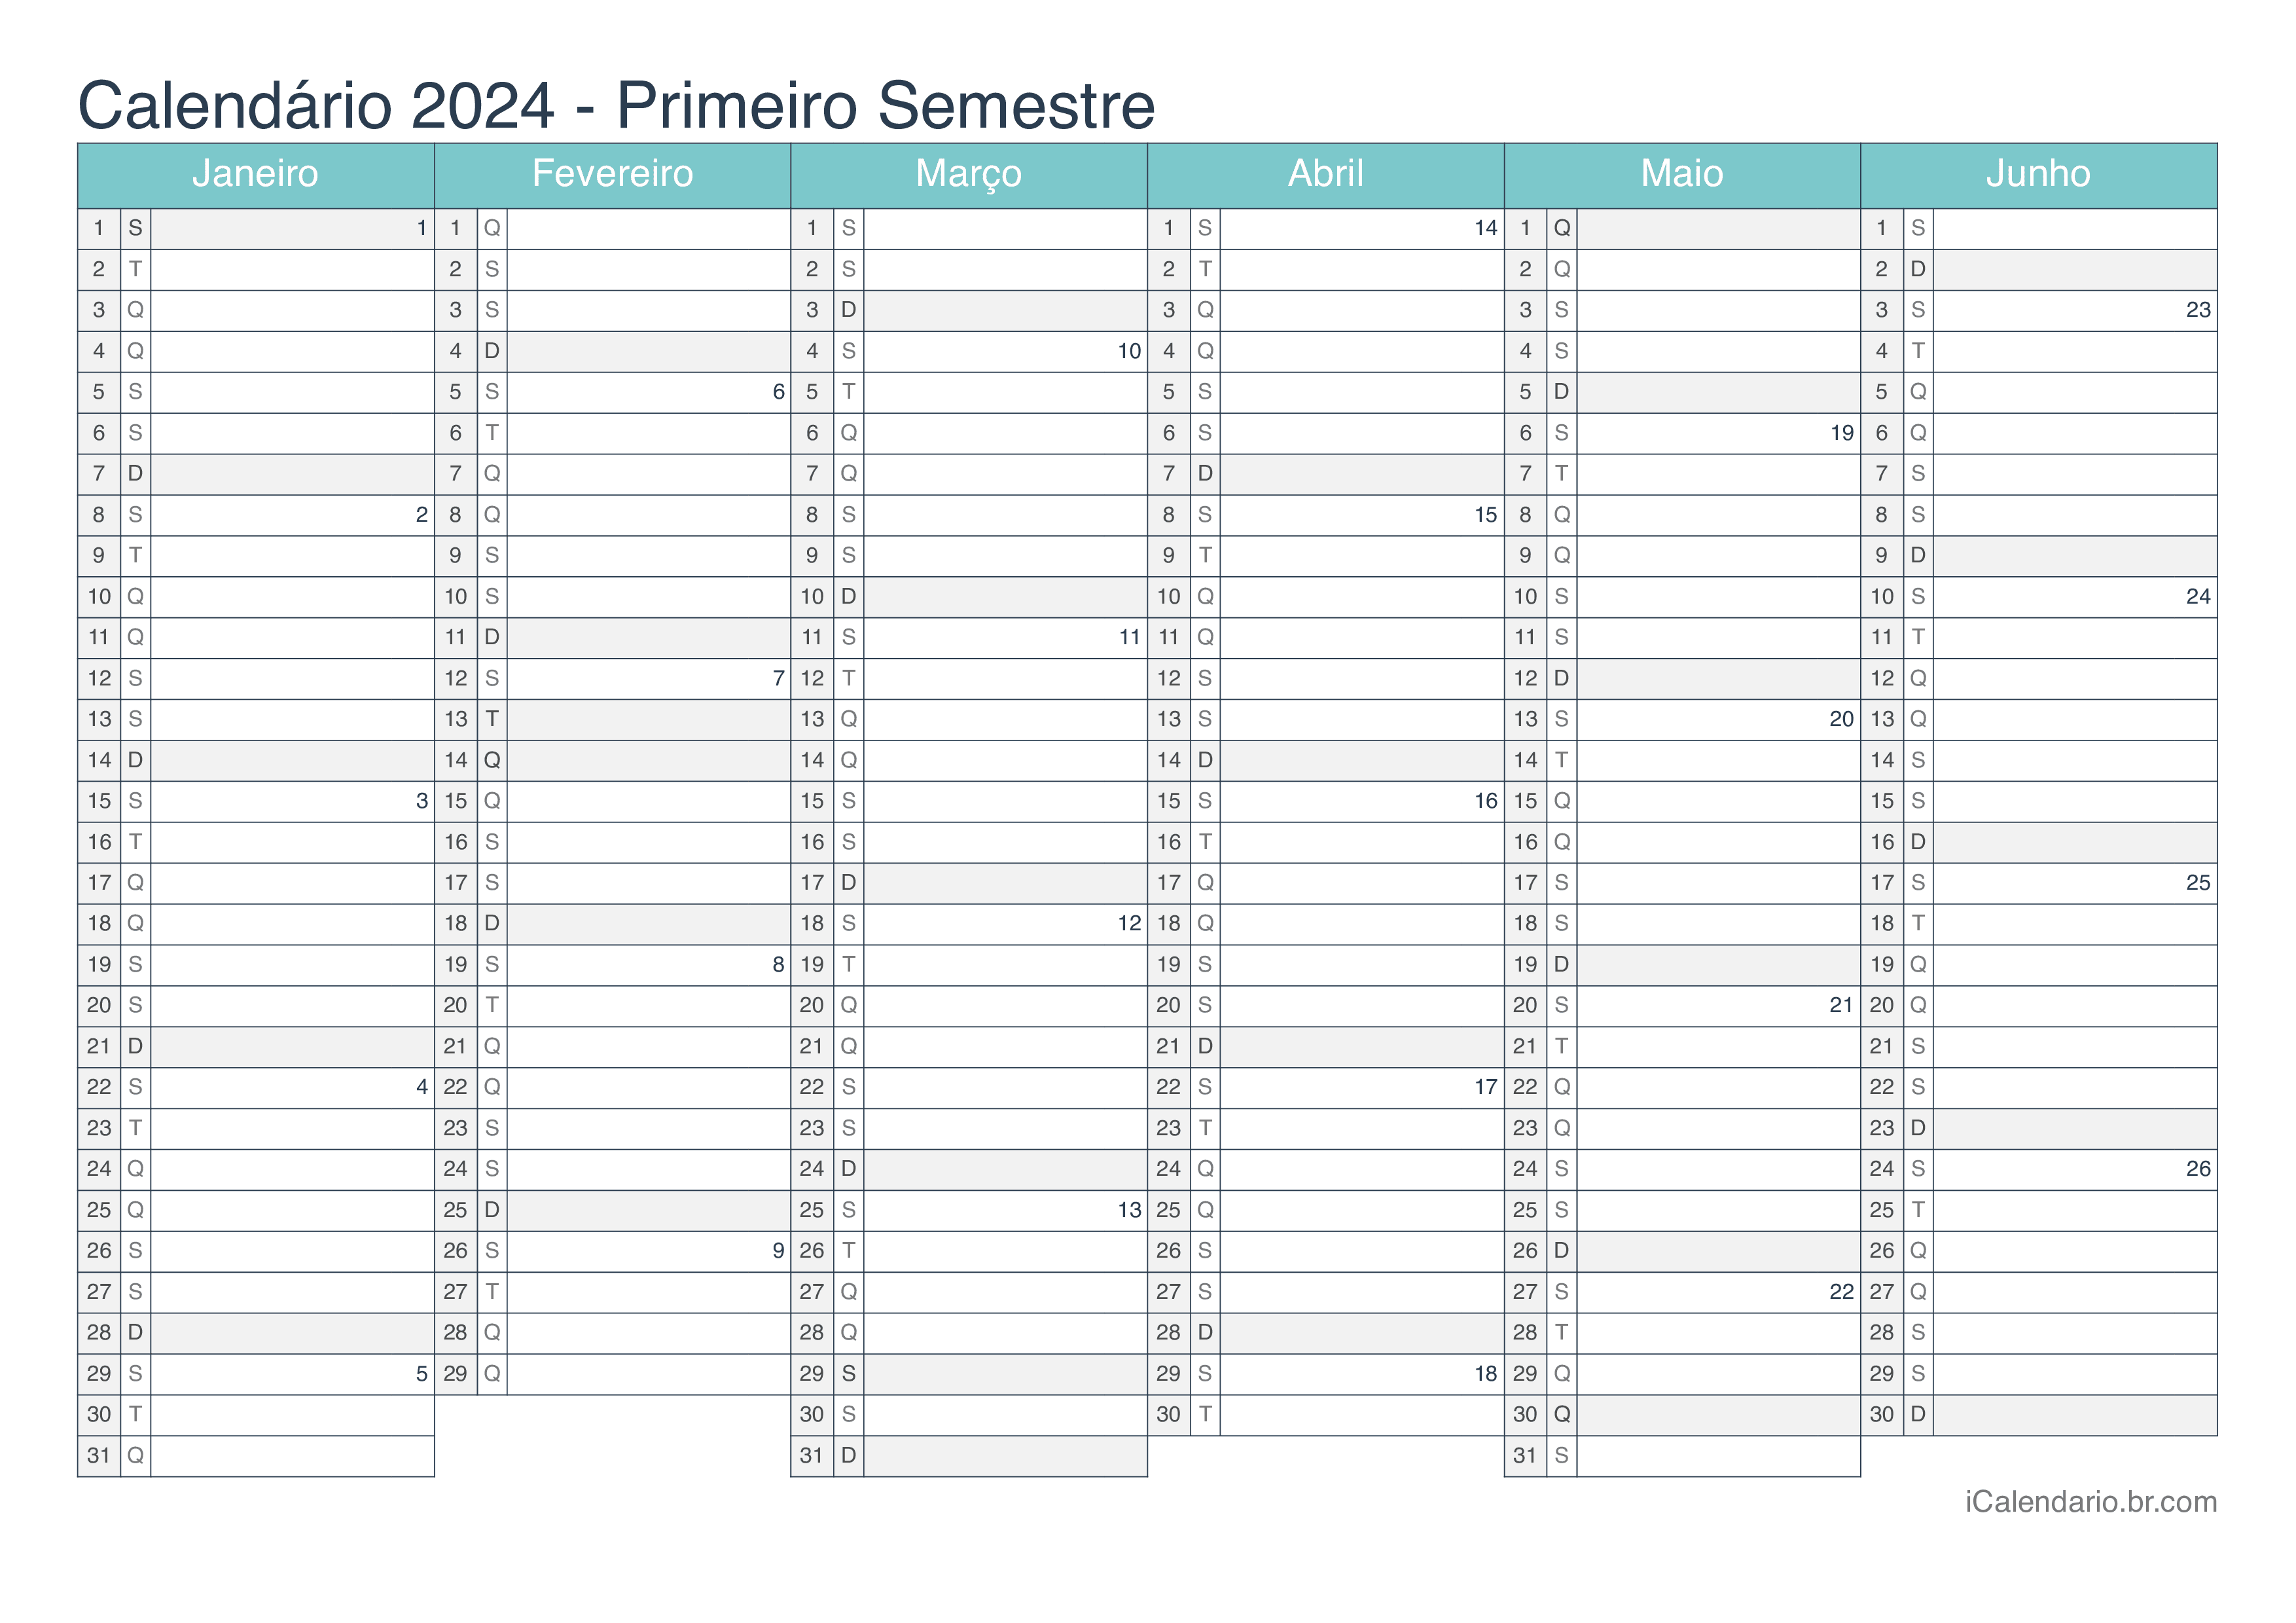 Calendário por semestre com números da semana 2024 - Turquesa